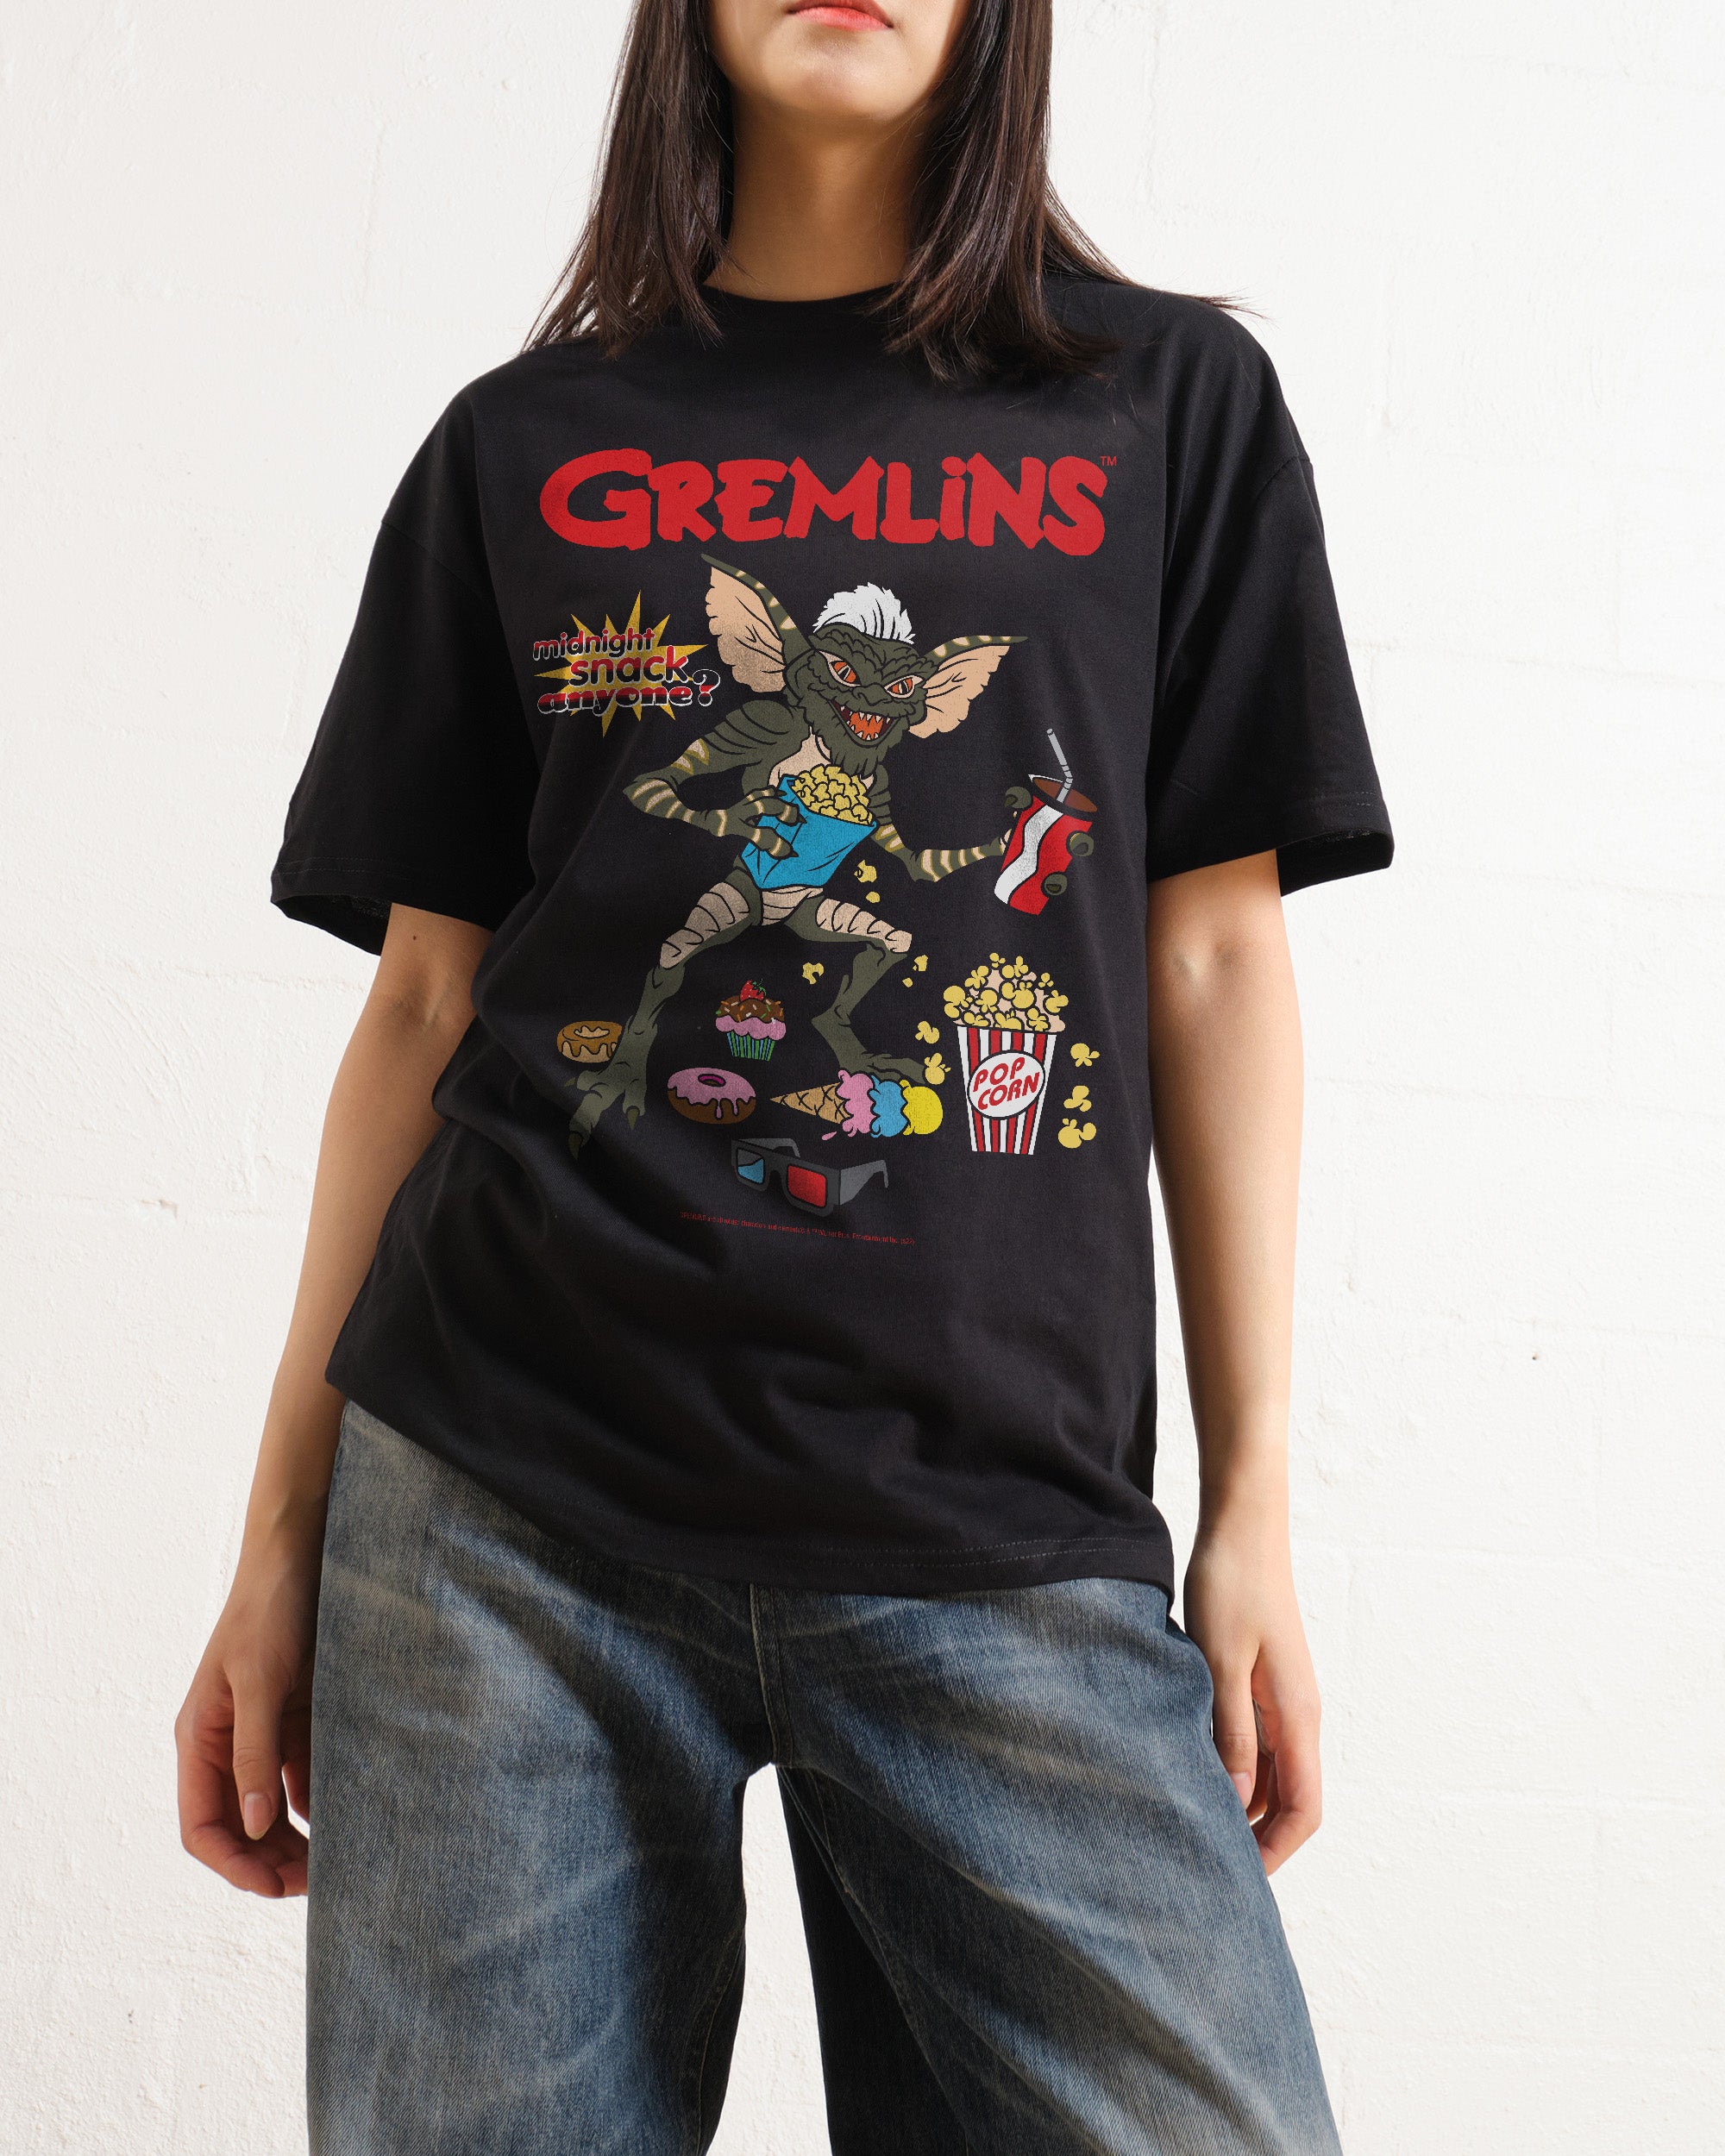 Gremlins Midnight Snack T-Shirt